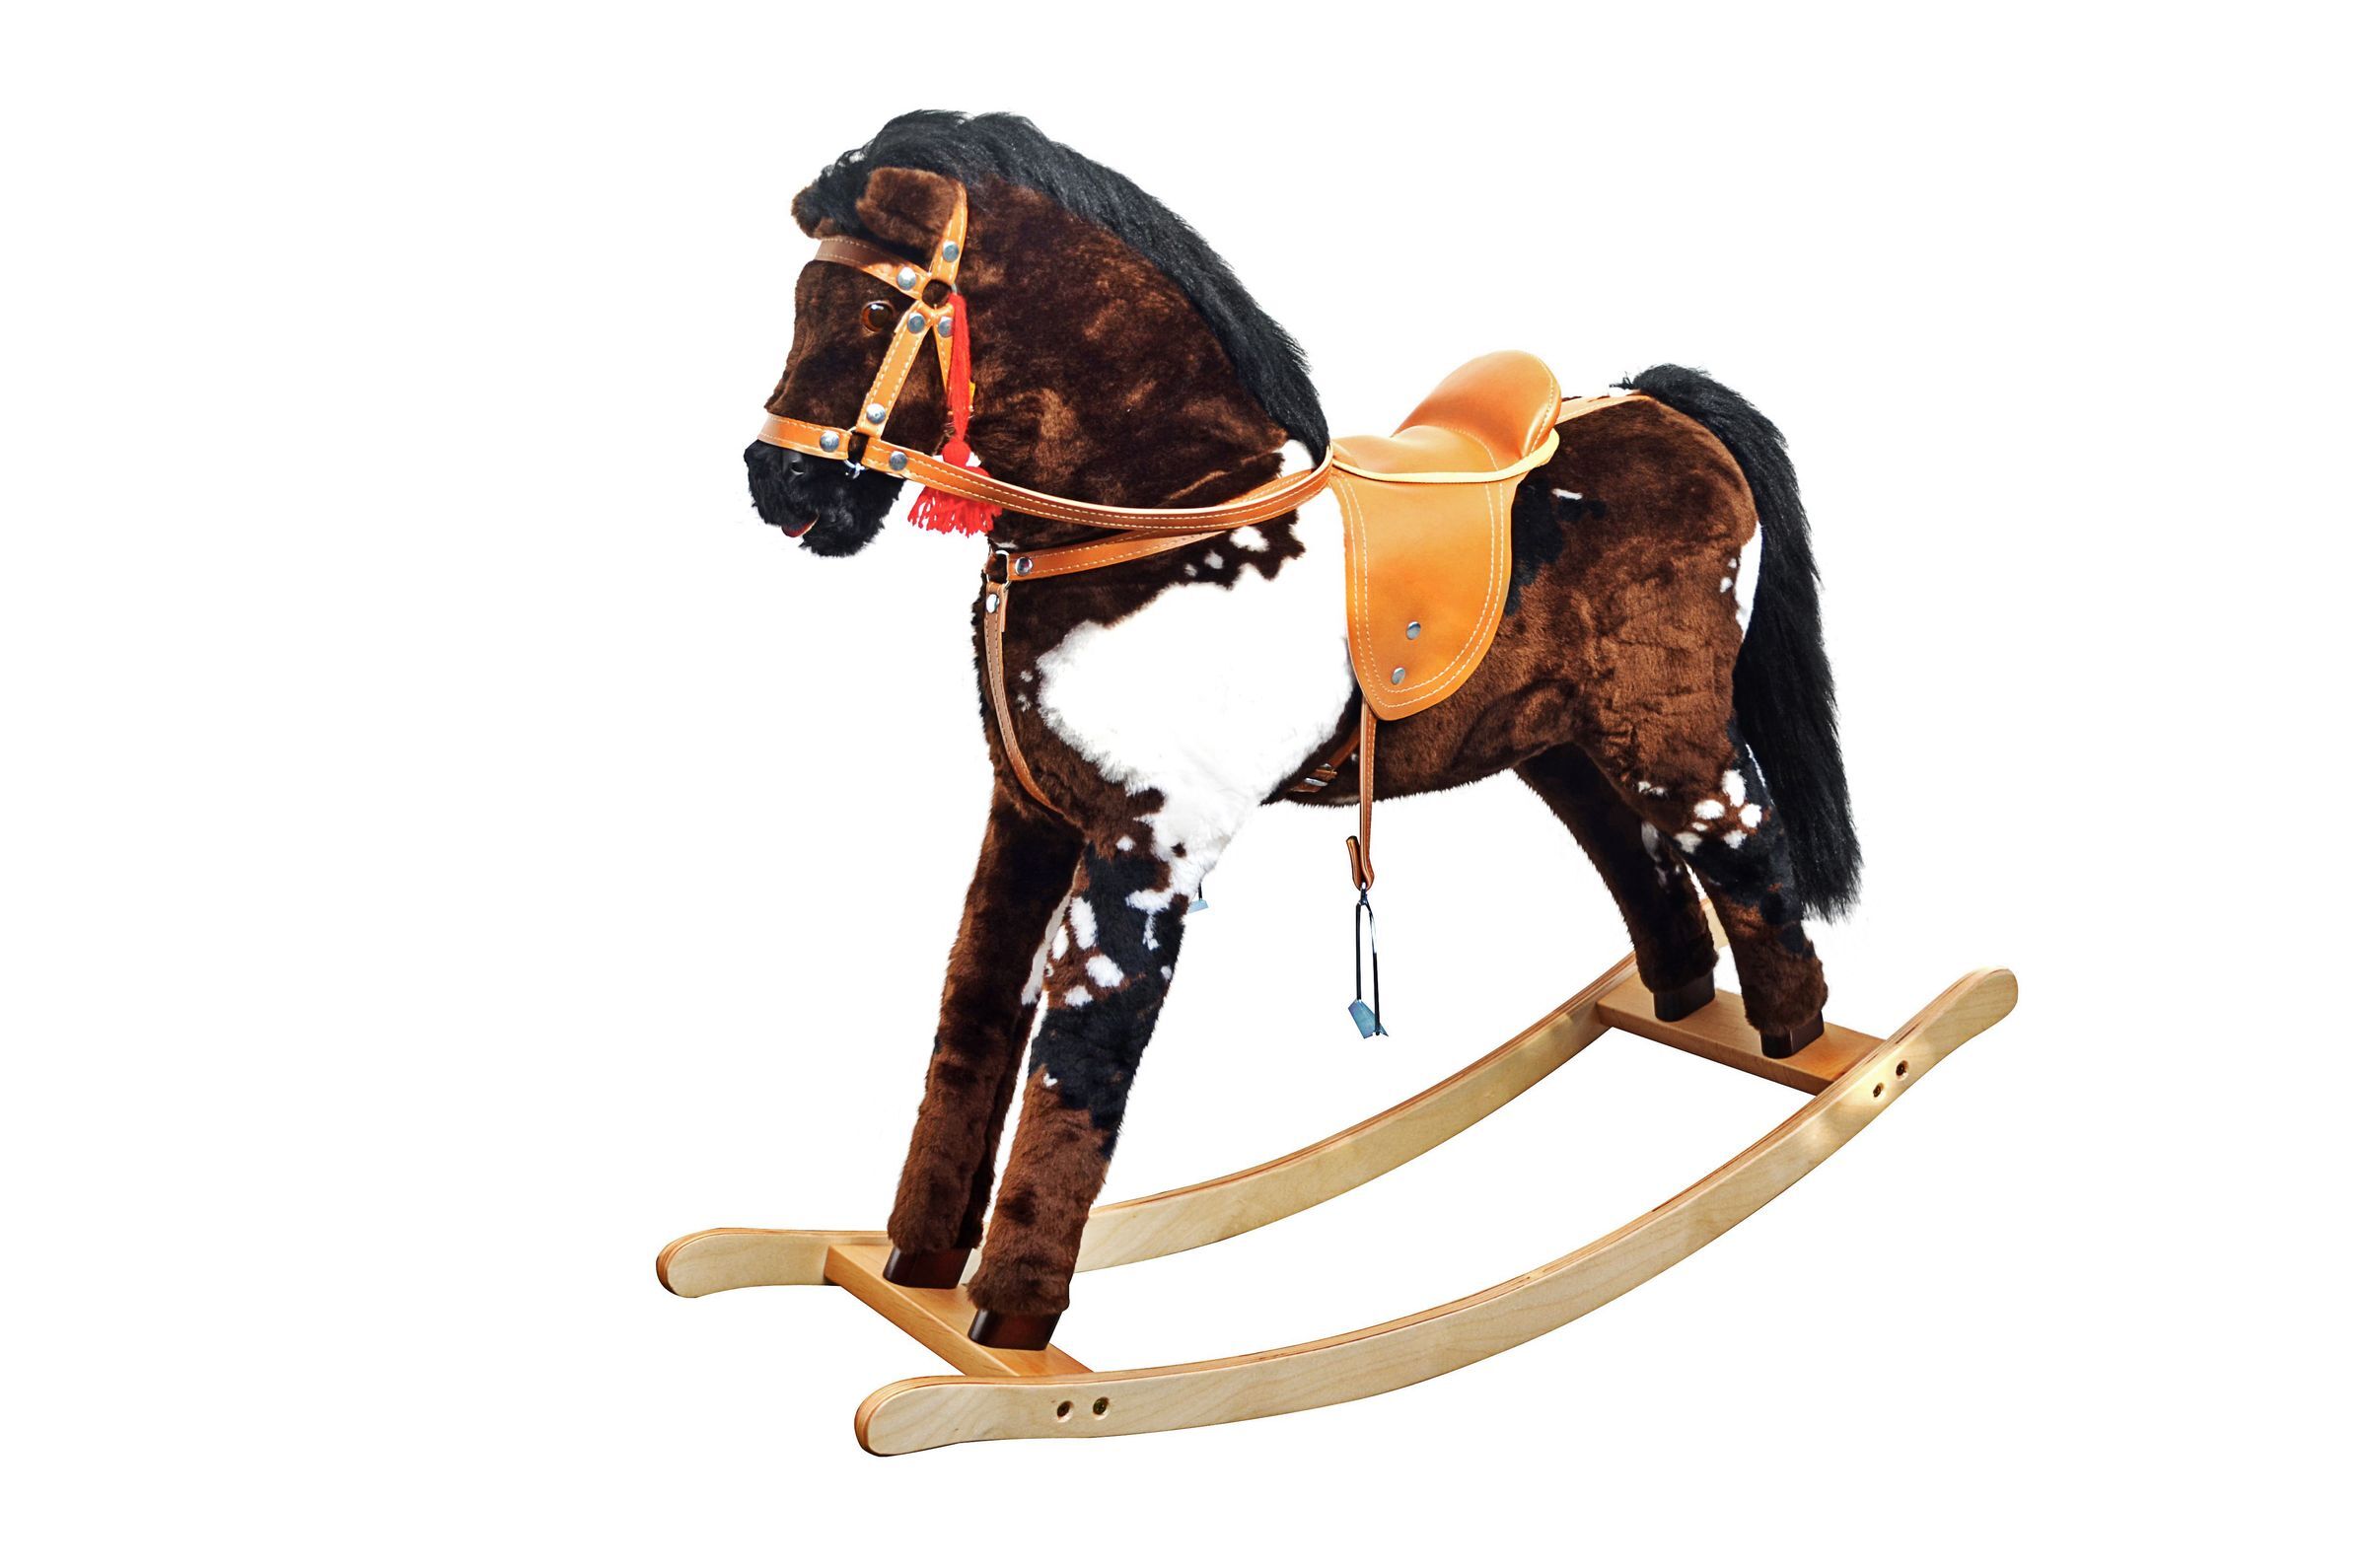 Solido cavallo a dondolo pezzato per bambini da 3 anni con solidi finimenti 96-111